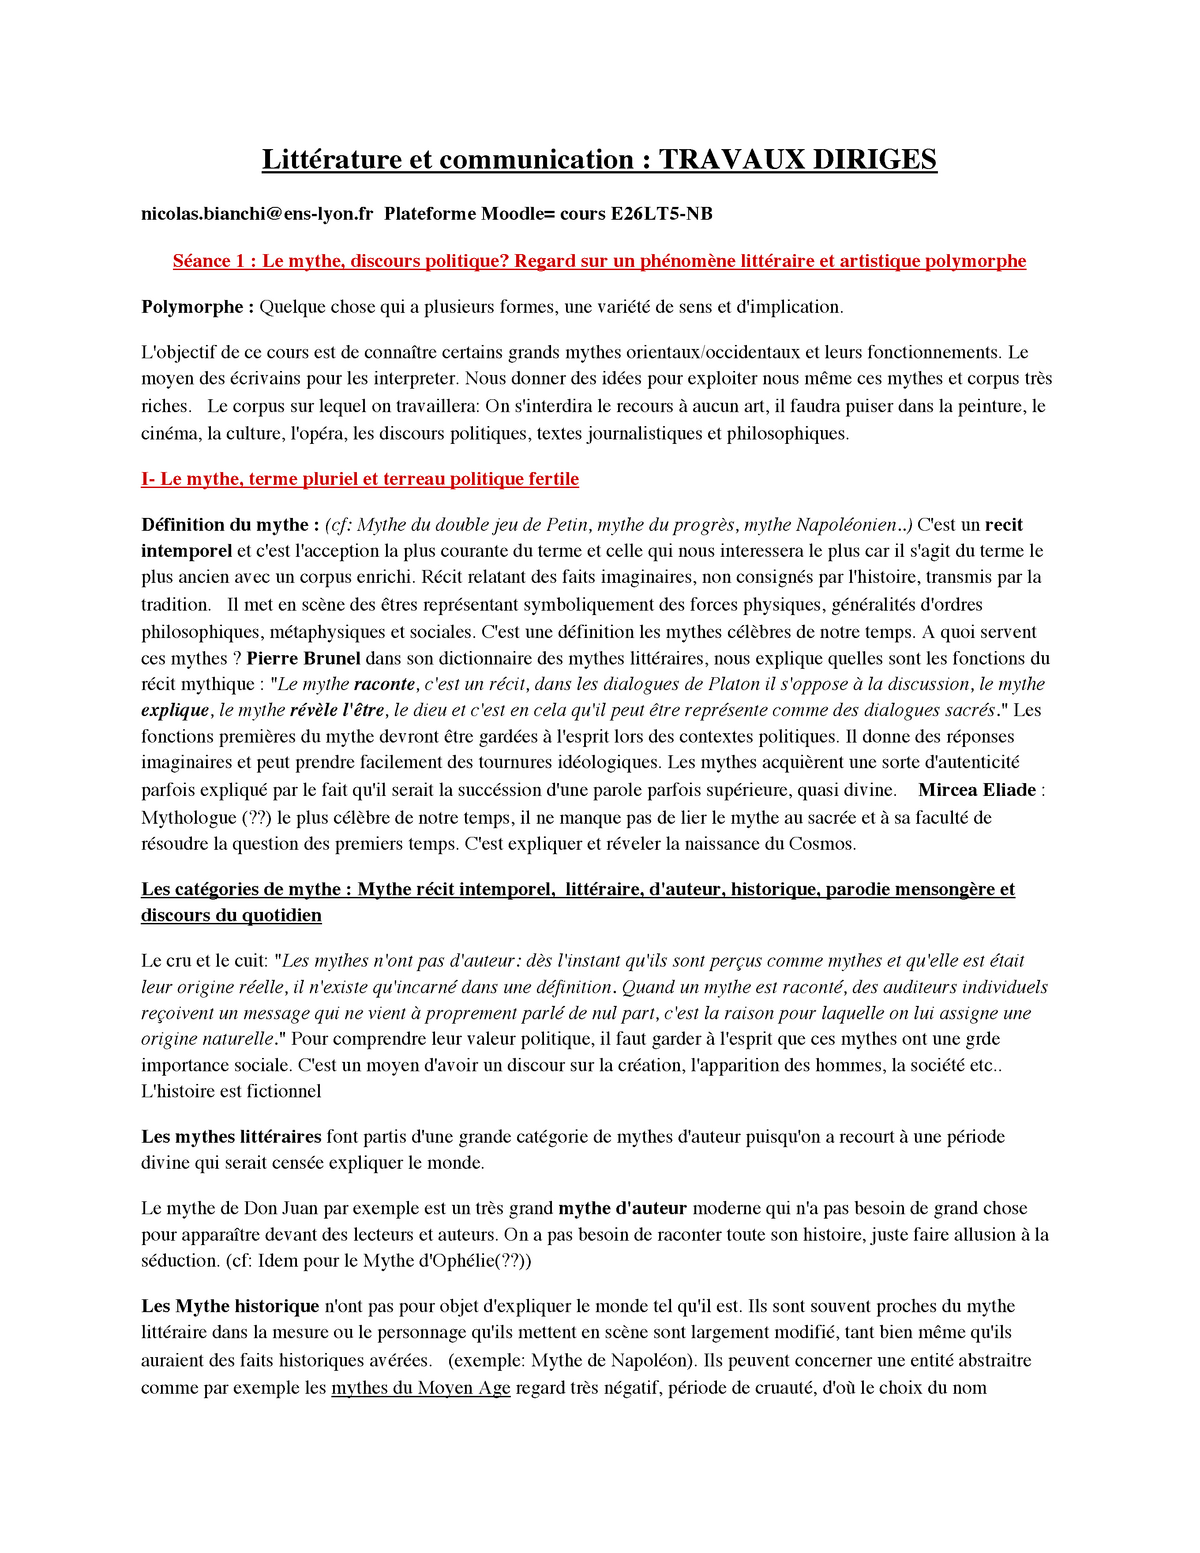 Litterature Et Communication Litterature Et Communication Travaux Diriges Nicolas Ens Lyon Studocu